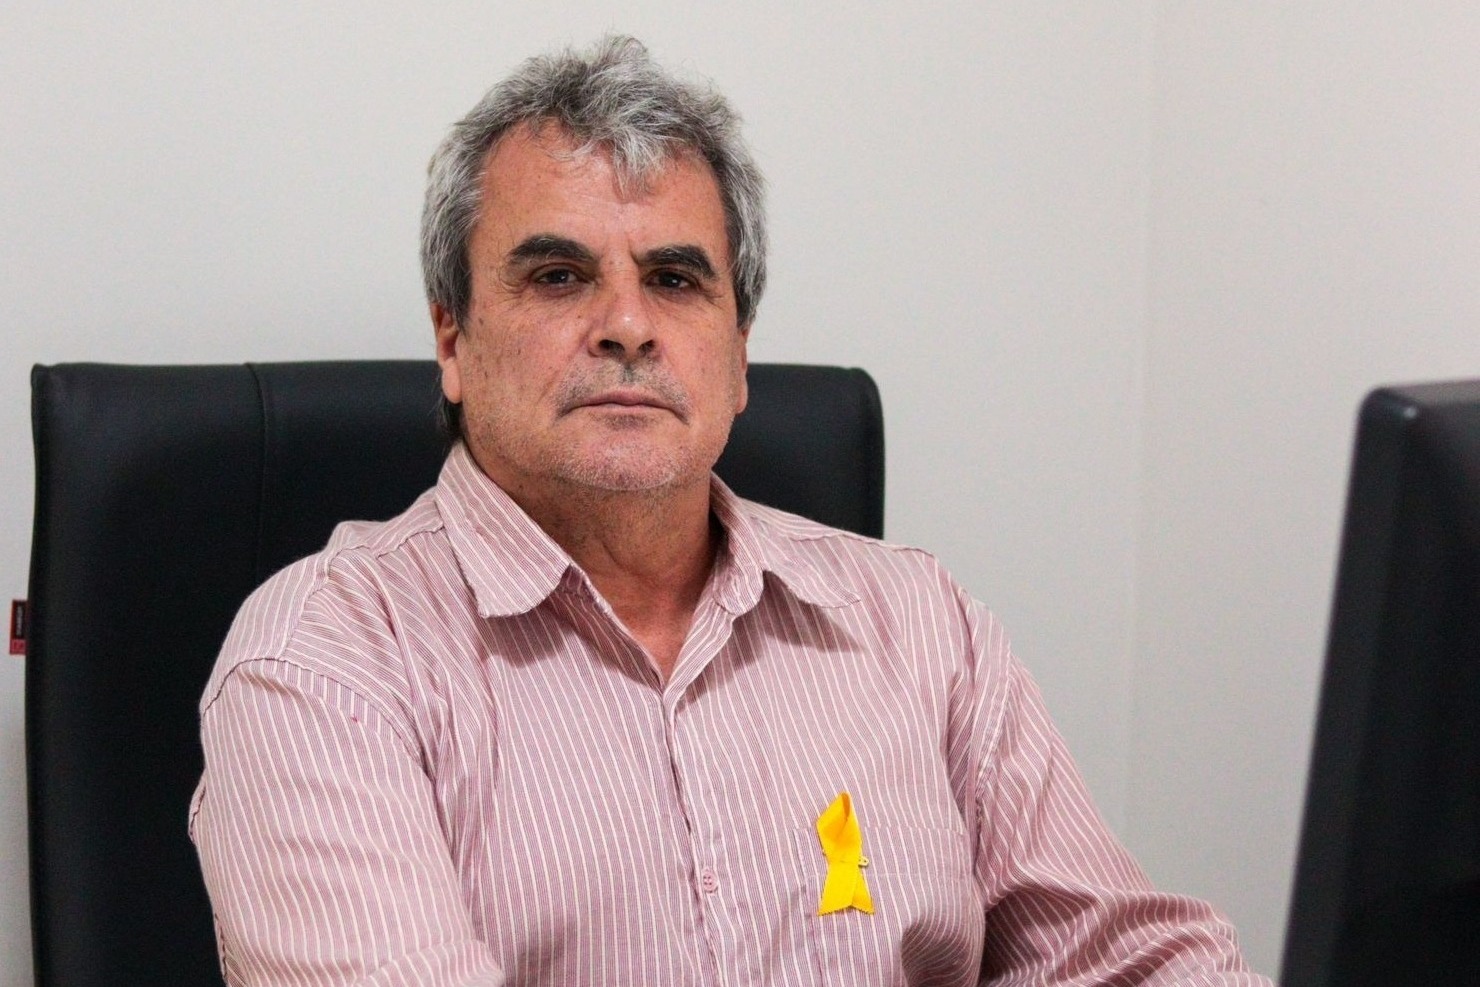 ARJORE: Associação publica nota de apoio ao jornalista Mario Quevedo